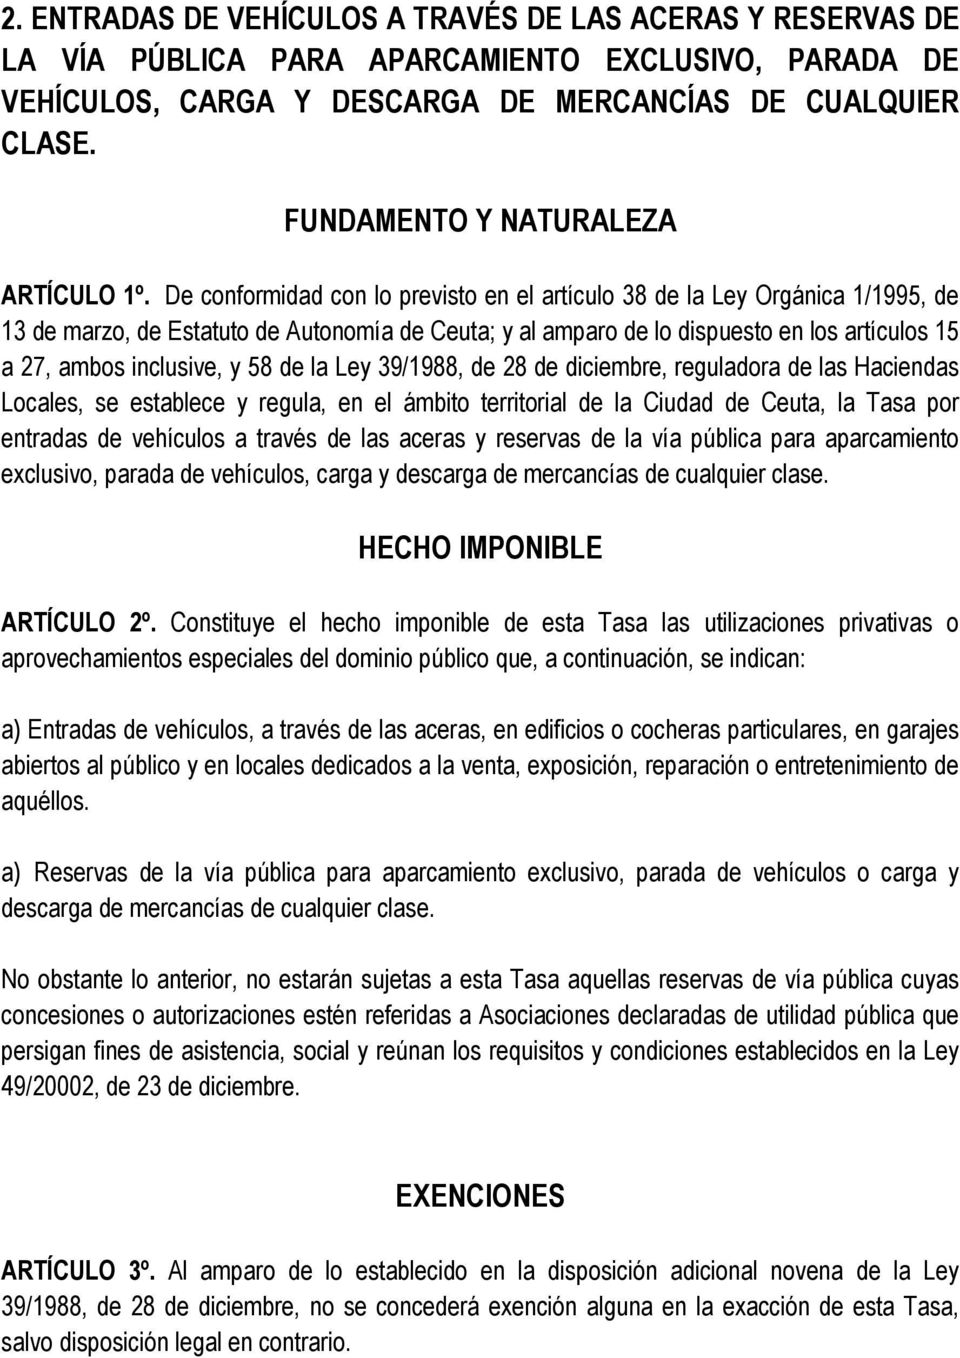 De conformidad con lo previsto en el artículo 38 de la Ley Orgánica 1/1995, de 13 de marzo, de Estatuto de Autonomía de Ceuta; y al amparo de lo dispuesto en los artículos 15 a 27, ambos inclusive, y